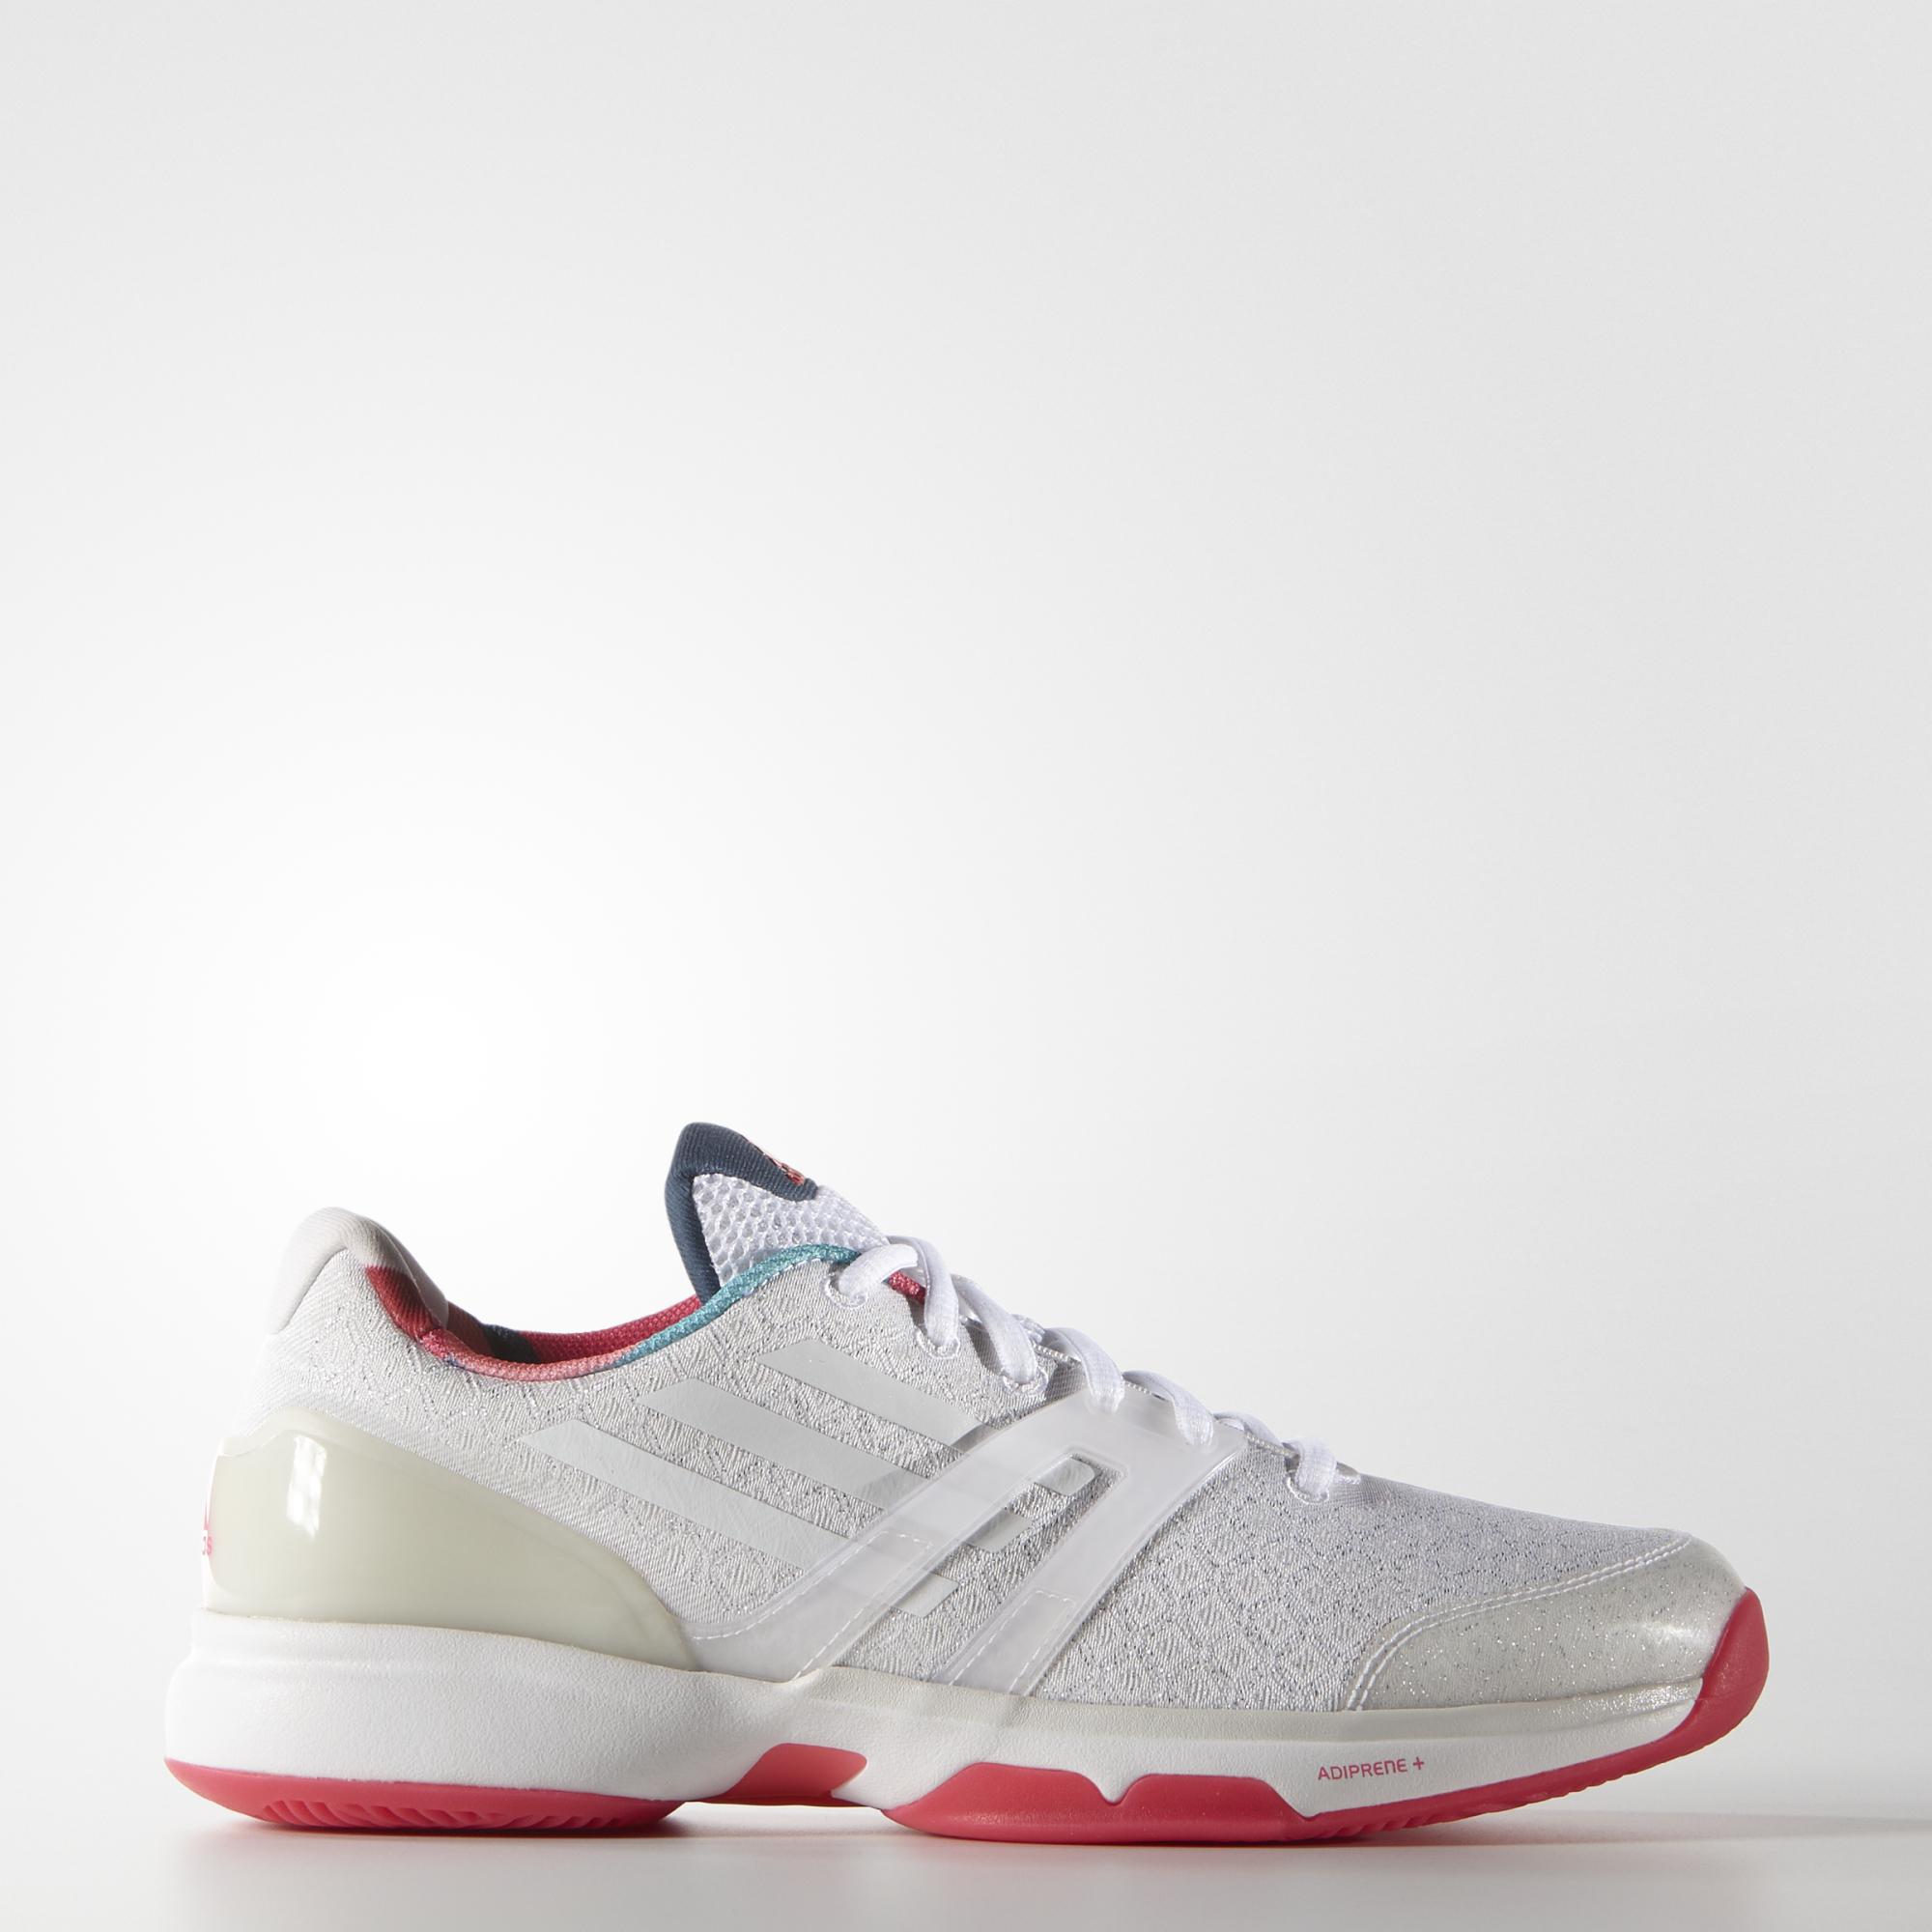 Adidas Womens Adizero Ubersonic Tennis Shoes - White/Red - Tennisnuts.com